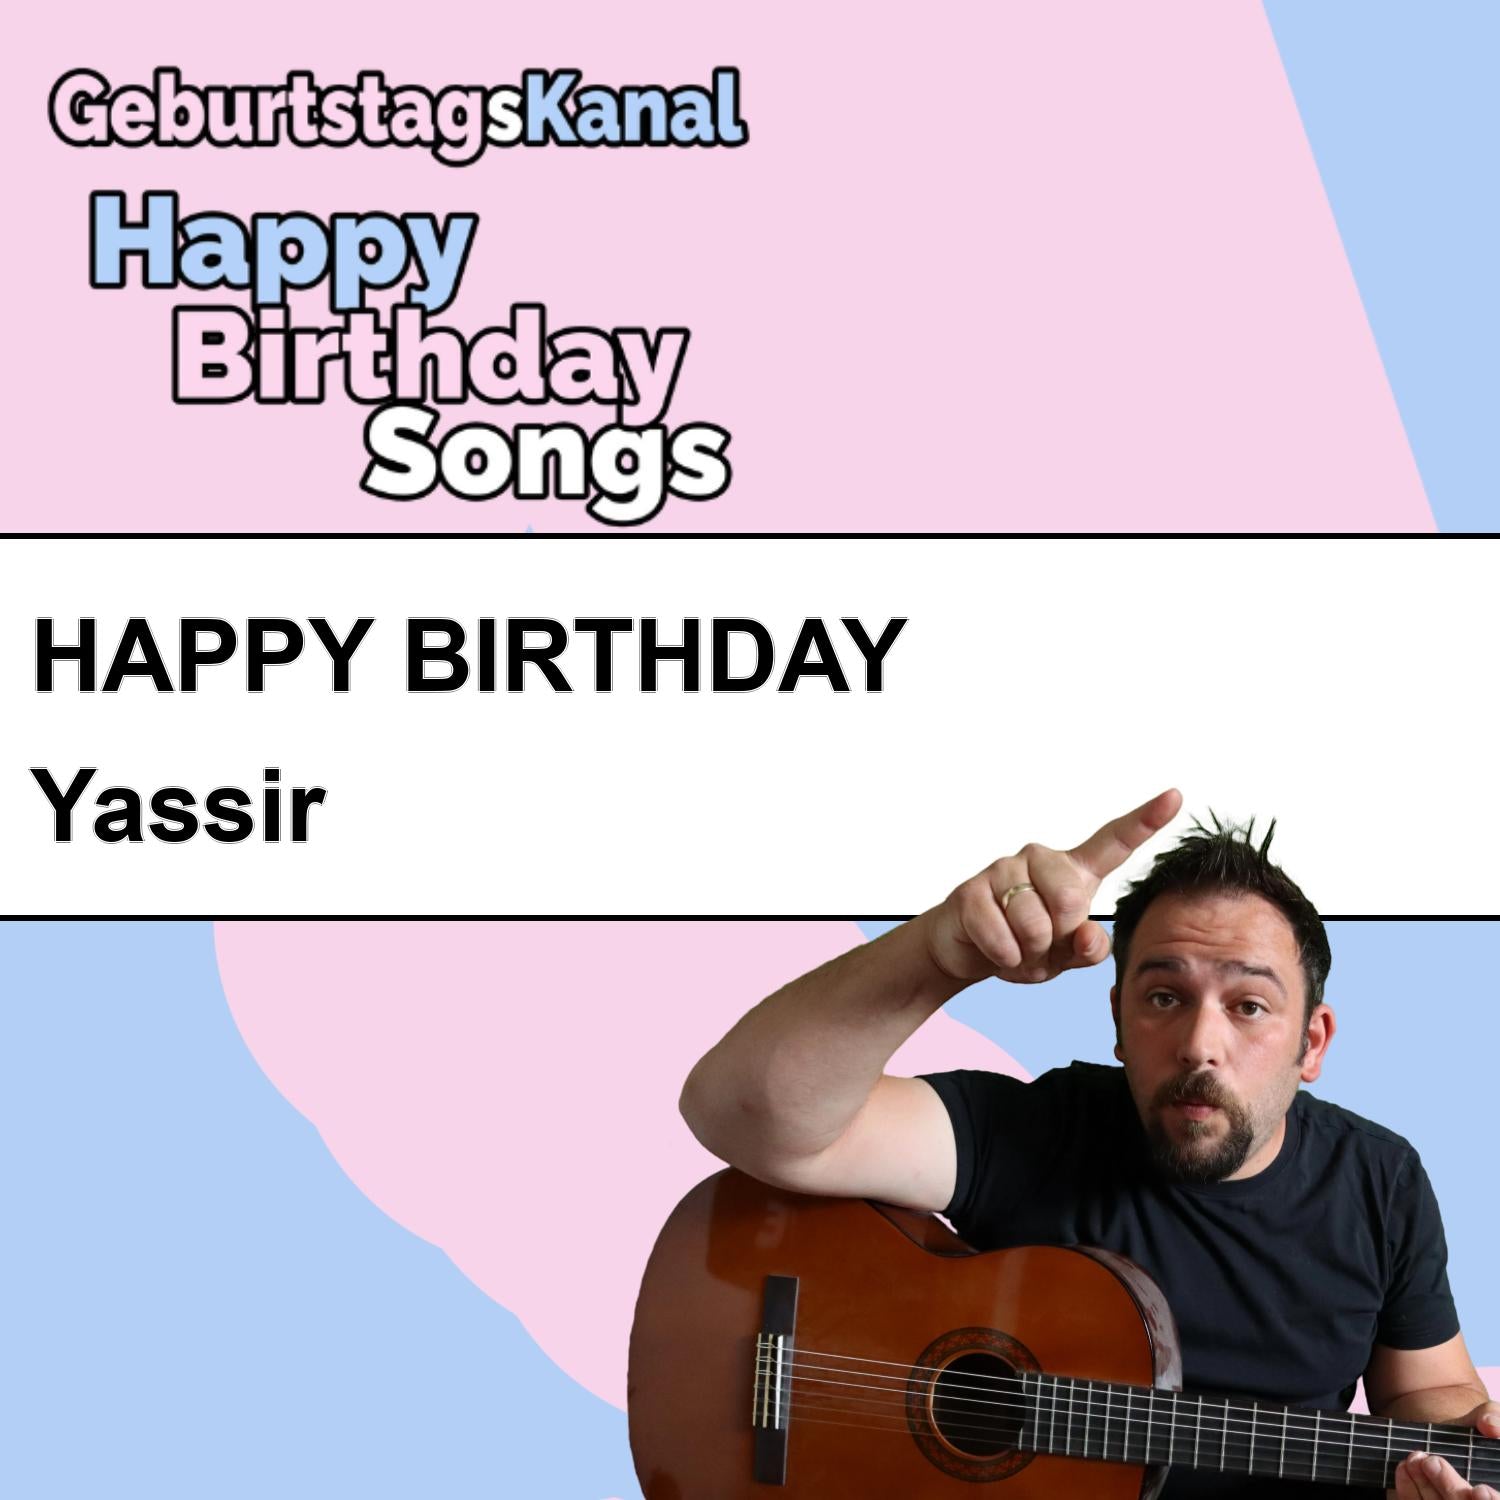 Produktbild Happy Birthday to you Yassir mit Wunschgrußbotschaft